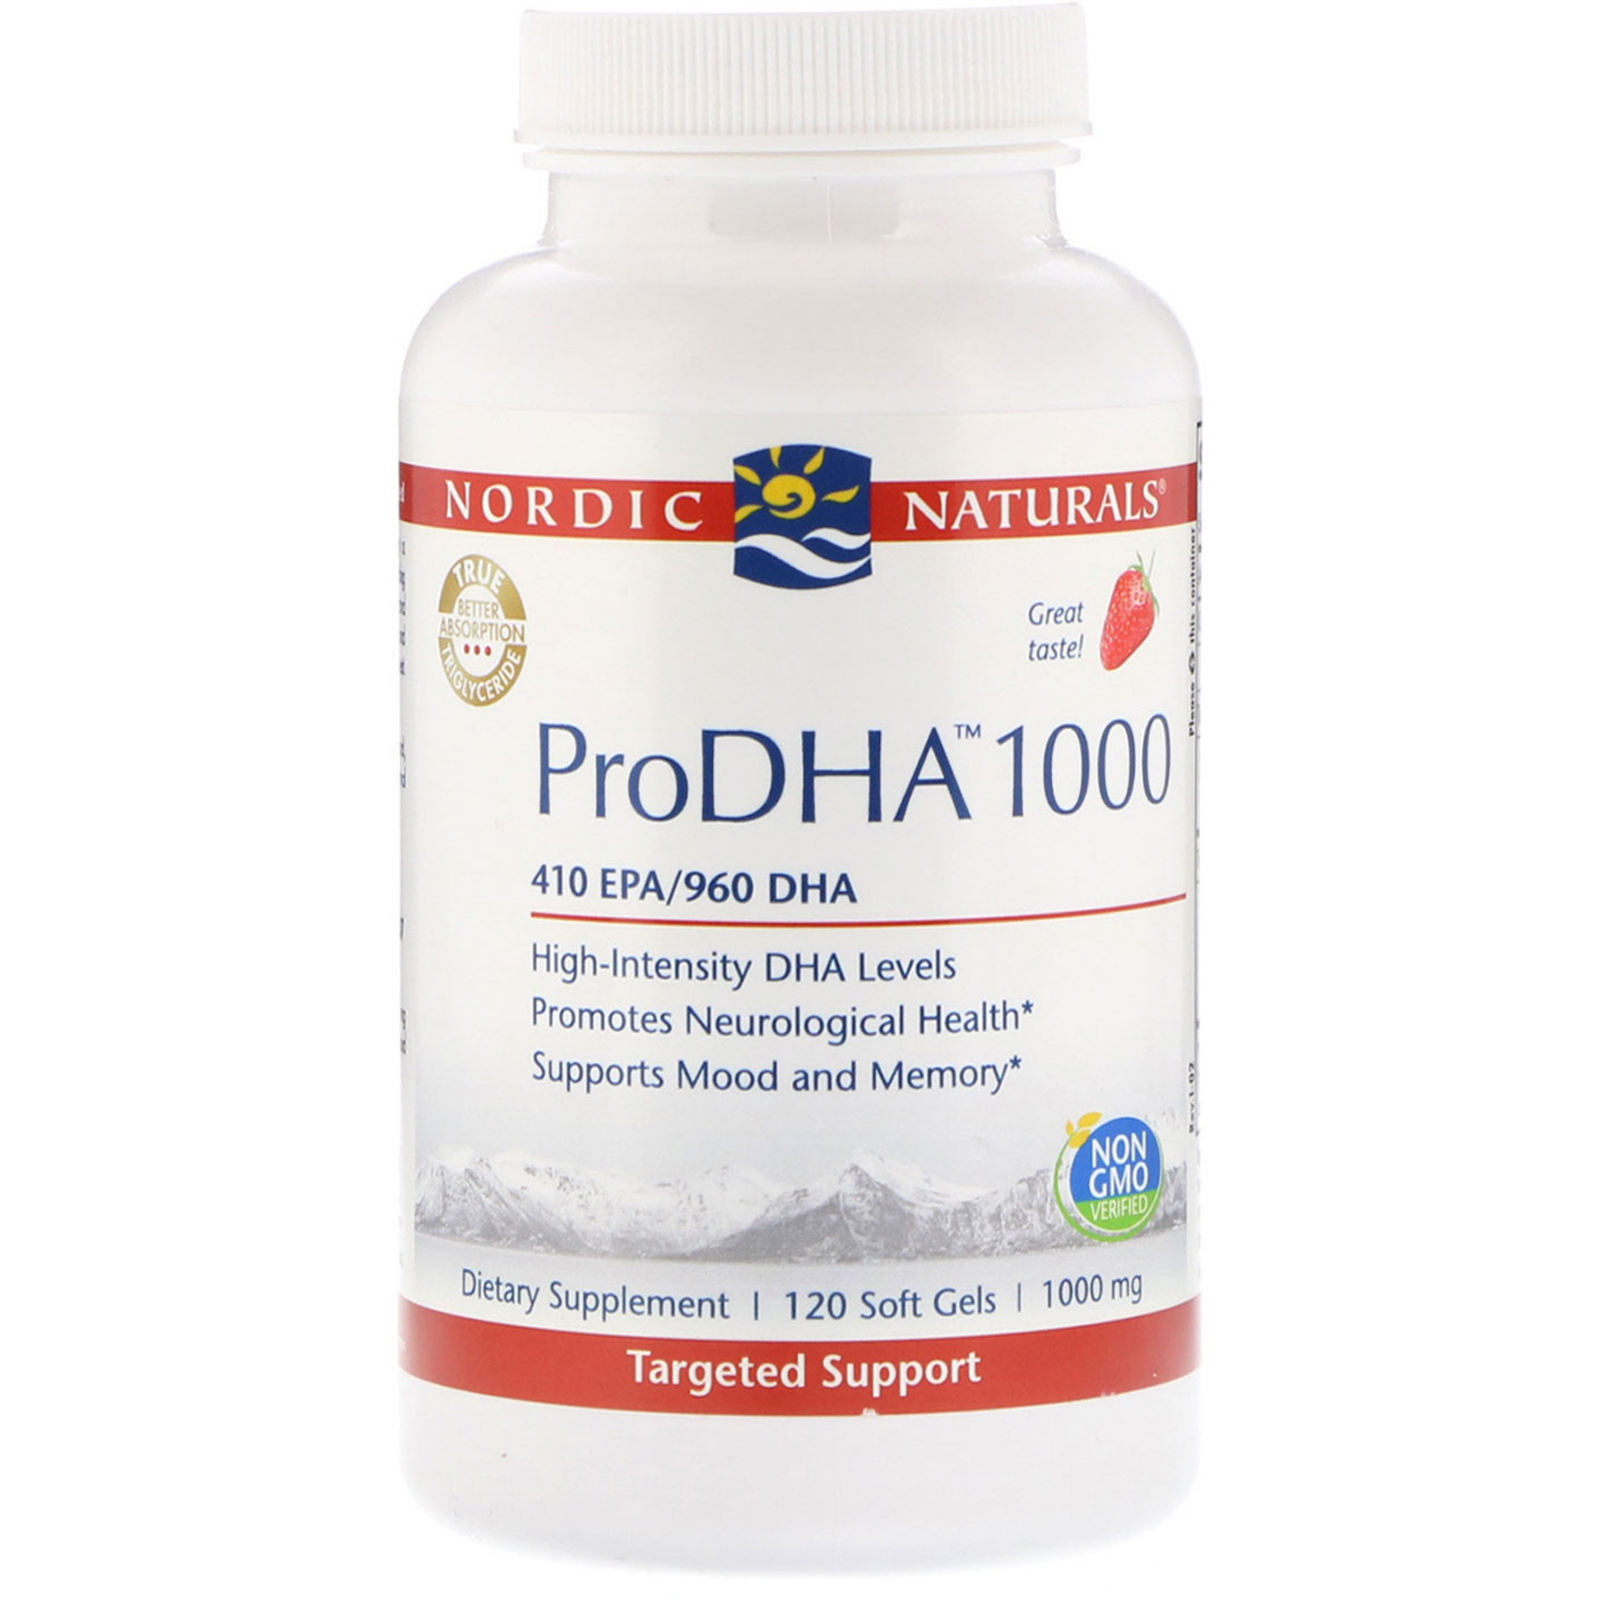 Nordic Naturals, "ПроДГК 1000", пищевая добавка с ДГК (DHA), 1000 мг, 120 мягких желатиновых капсул с жидкостью